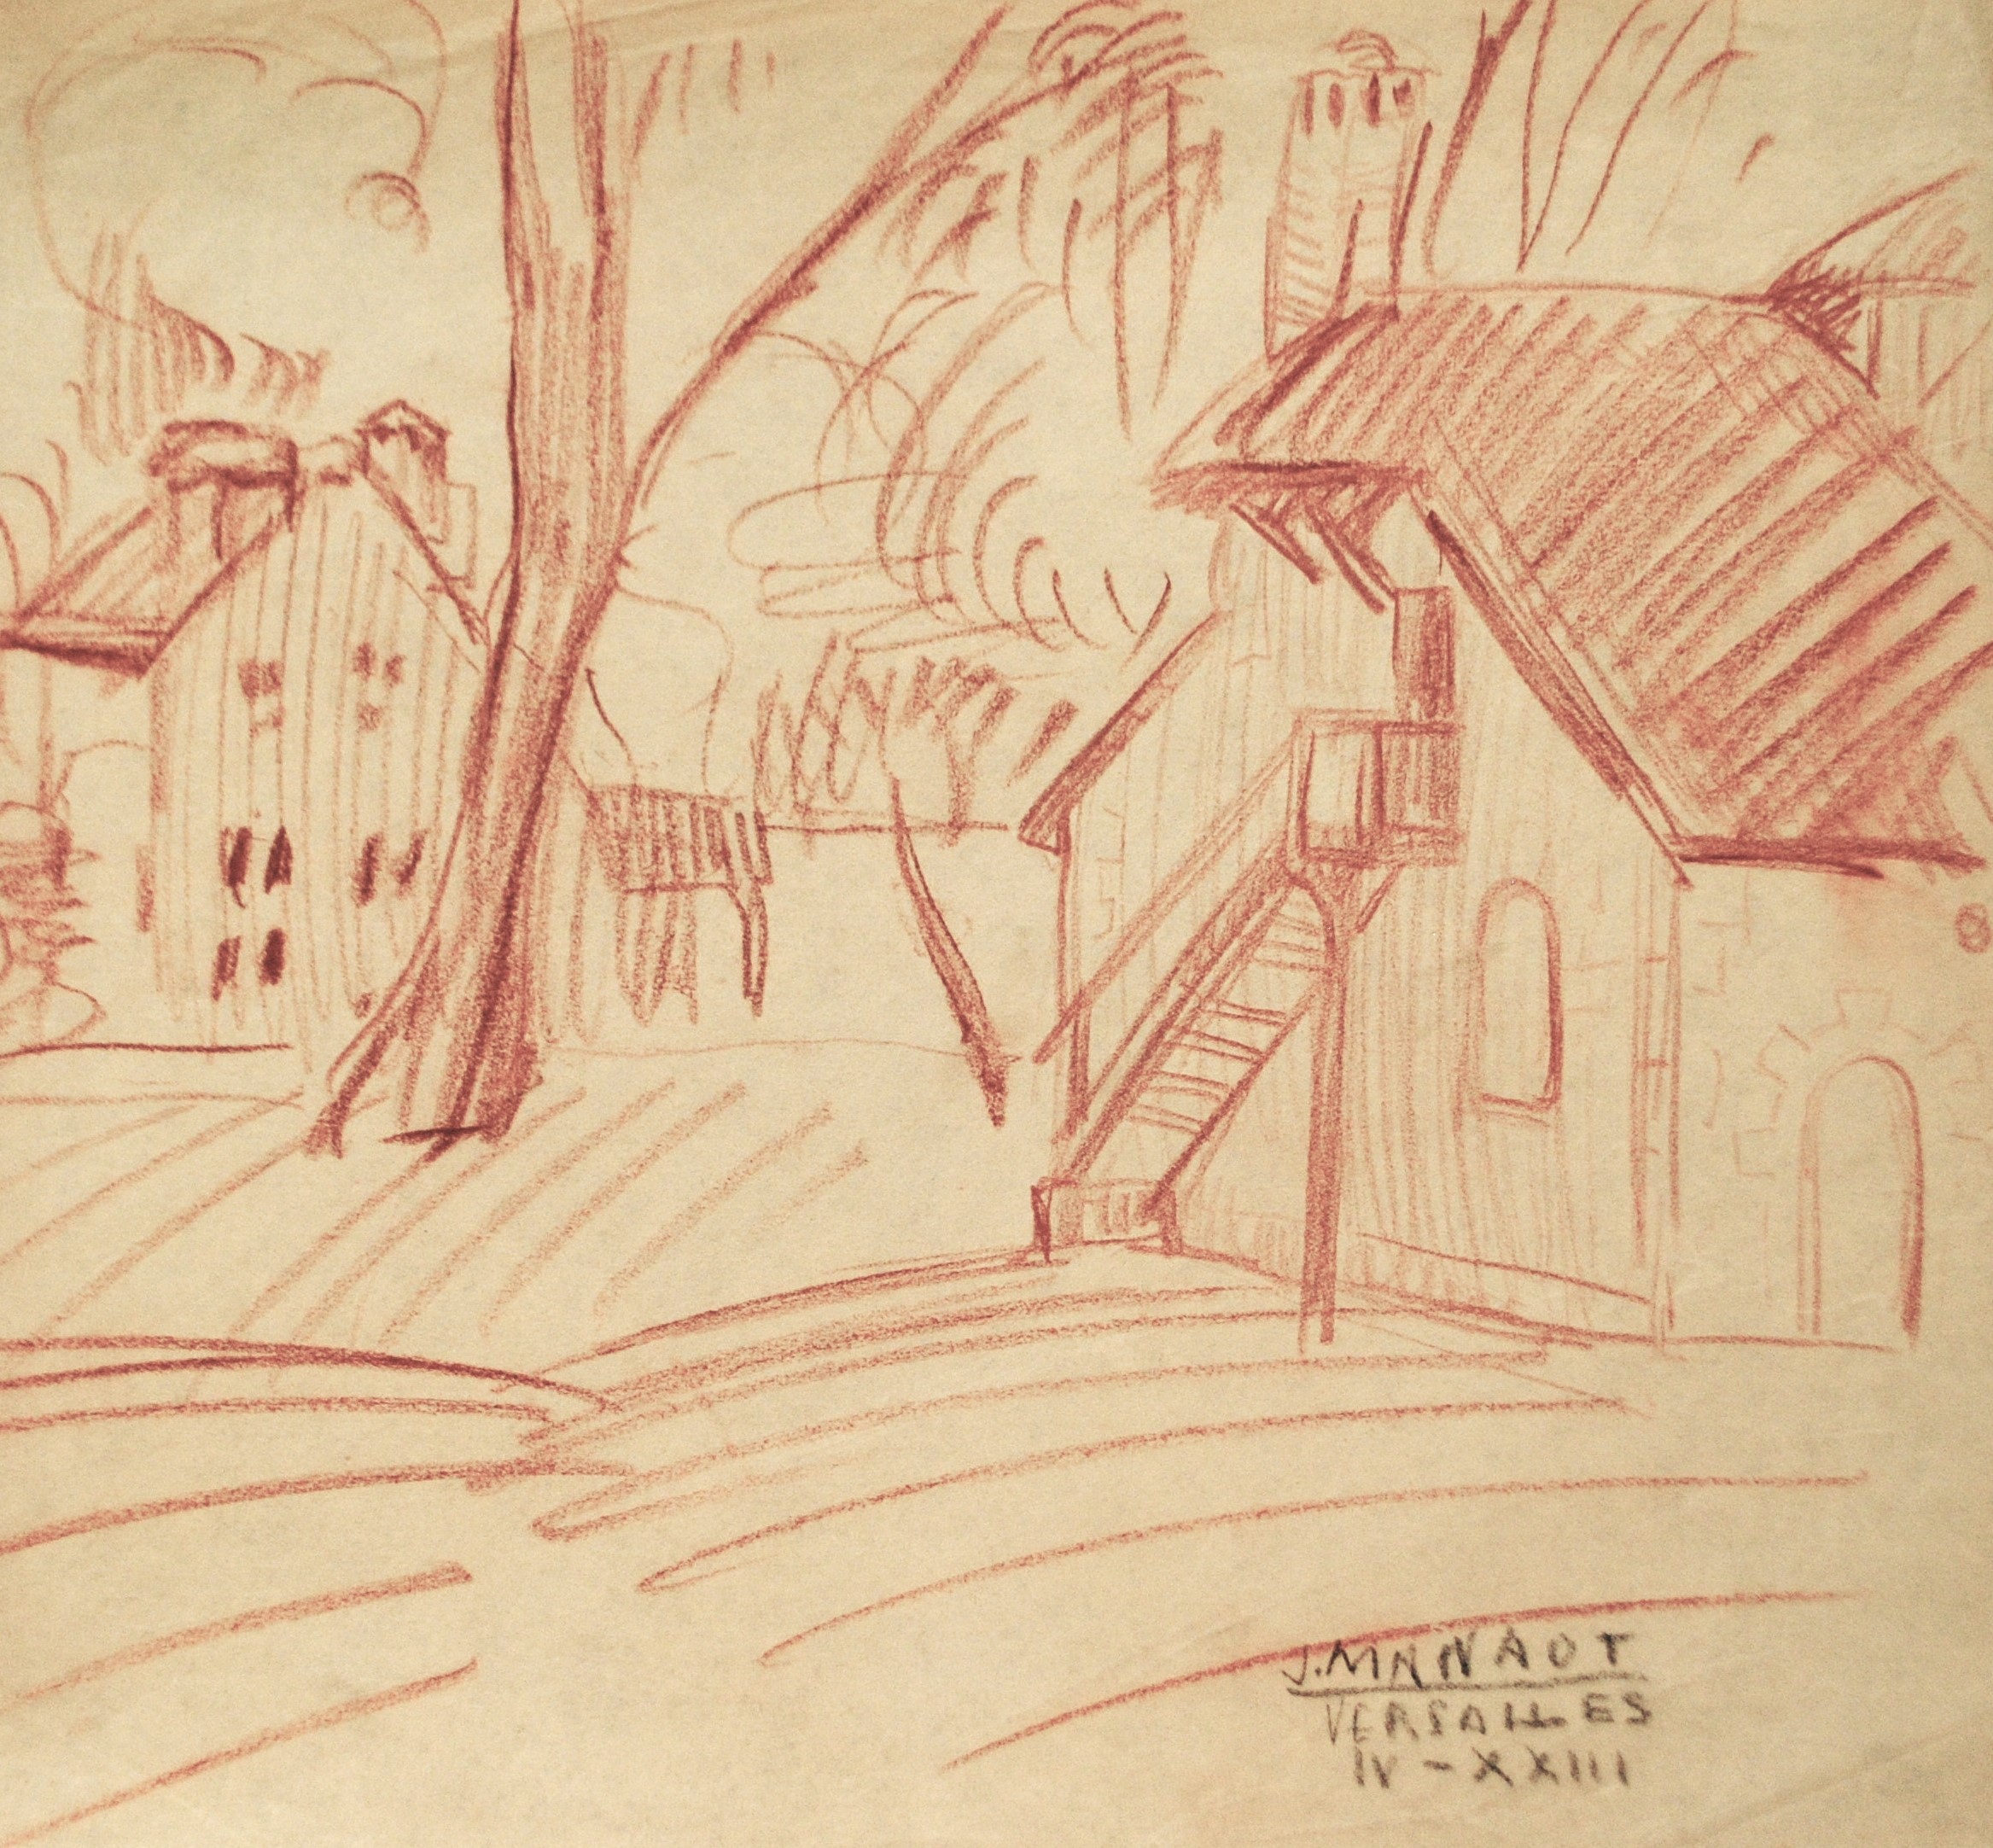 Dibujo de José Manaut titulado Casas con árbol, Versalles, 1923/24. Lápiz color sobre papel.